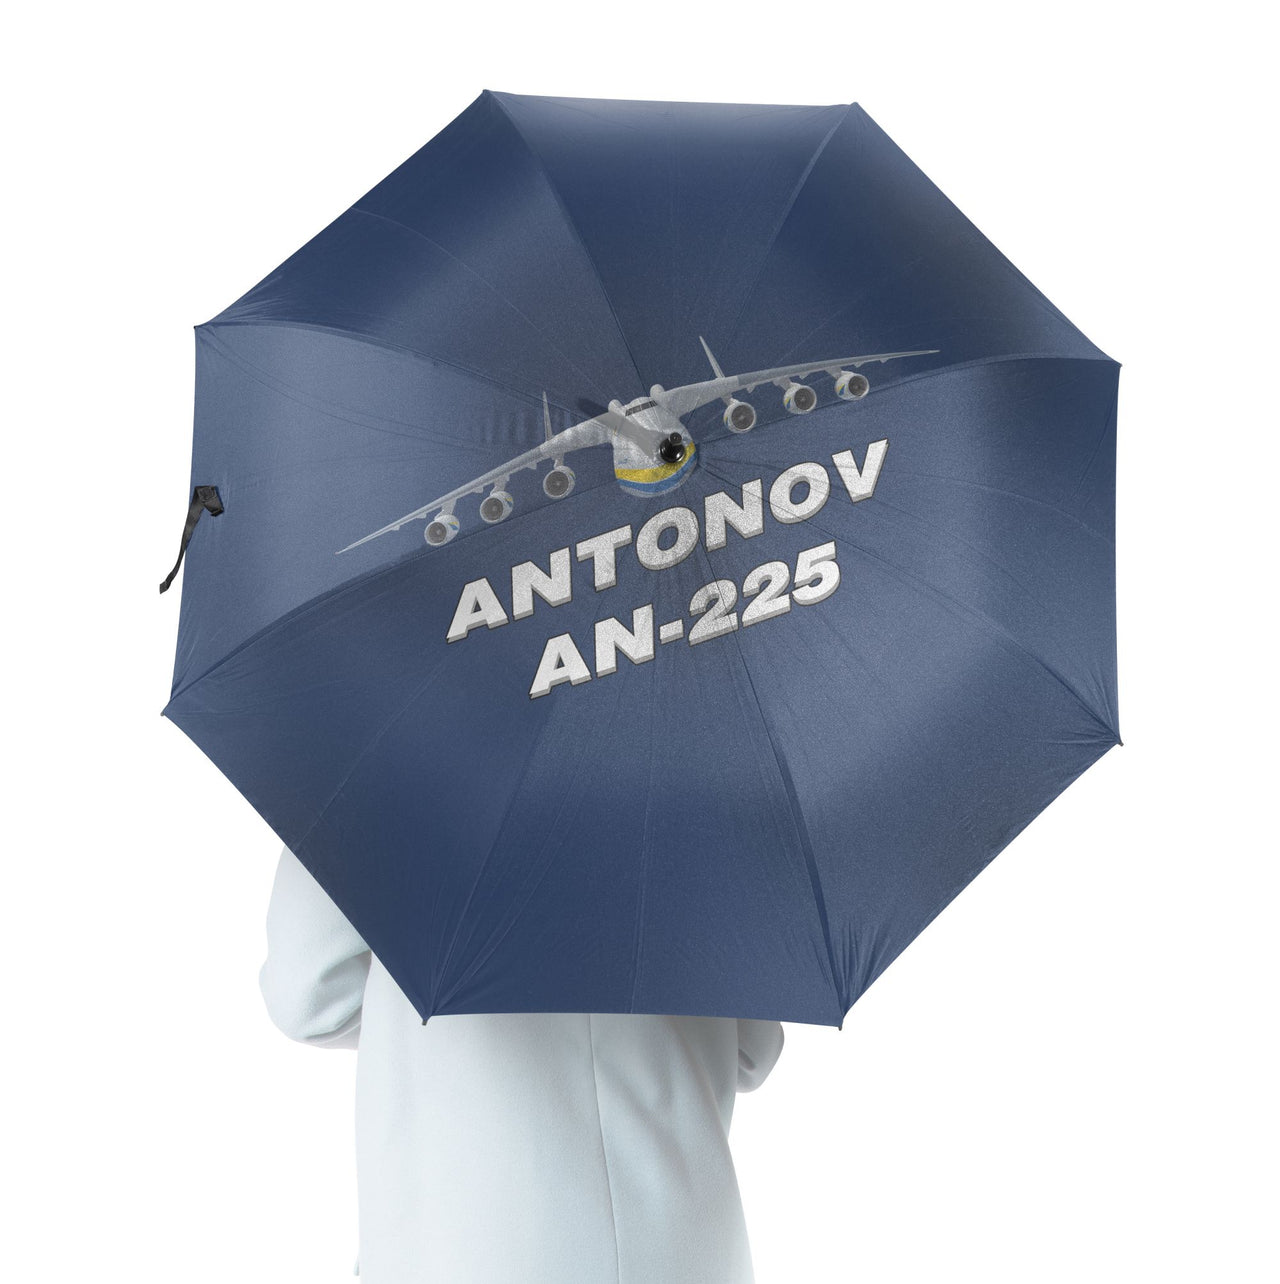 Antonov AN-225 (16) Designed Umbrella